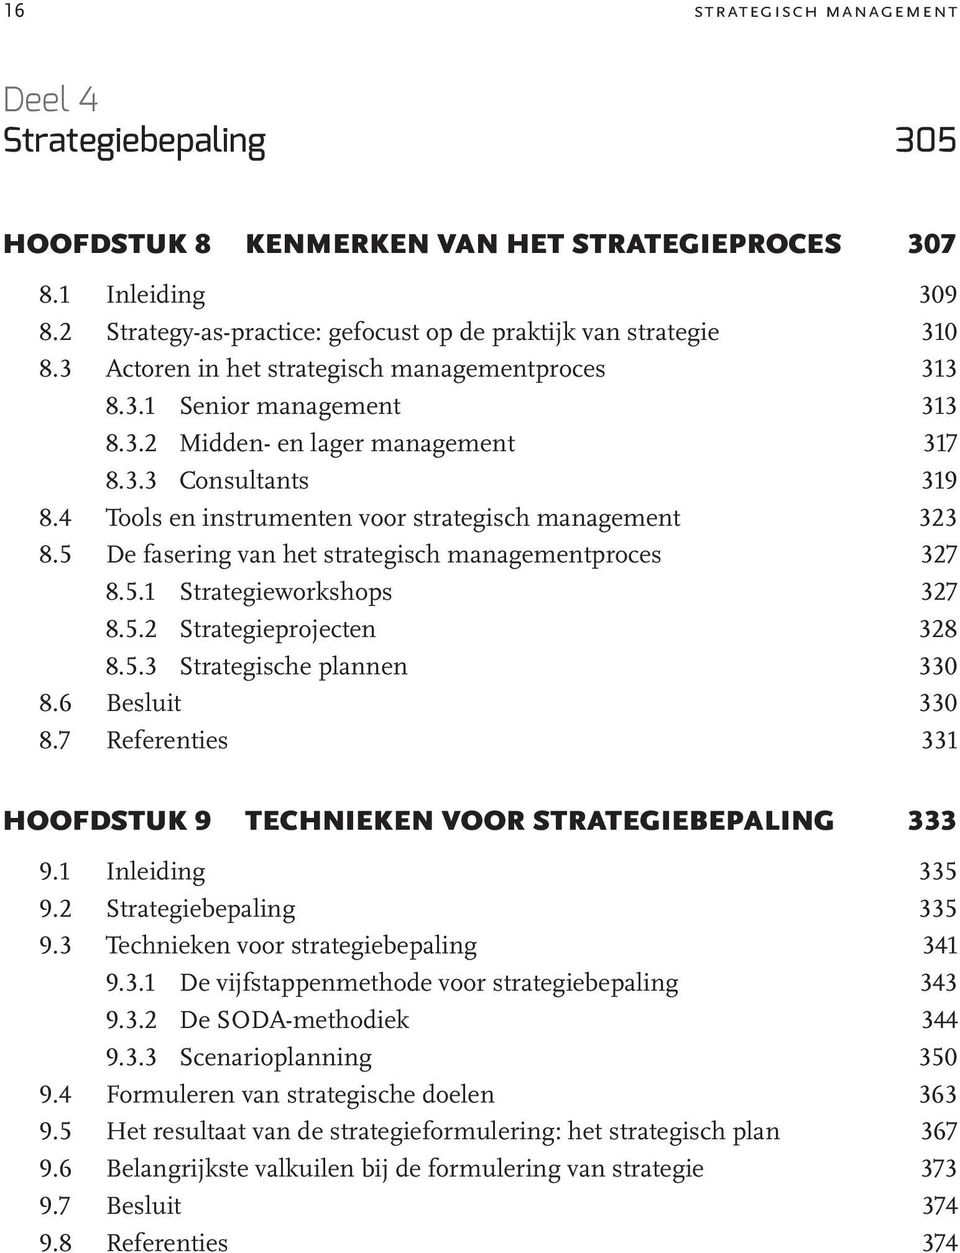 5 De fasering van het strategisch managementproces 327 8.5.1 Strategieworkshops 327 8.5.2 Strategieprojecten 328 8.5.3 Strategische plannen 330 8.6 Besluit 330 8.